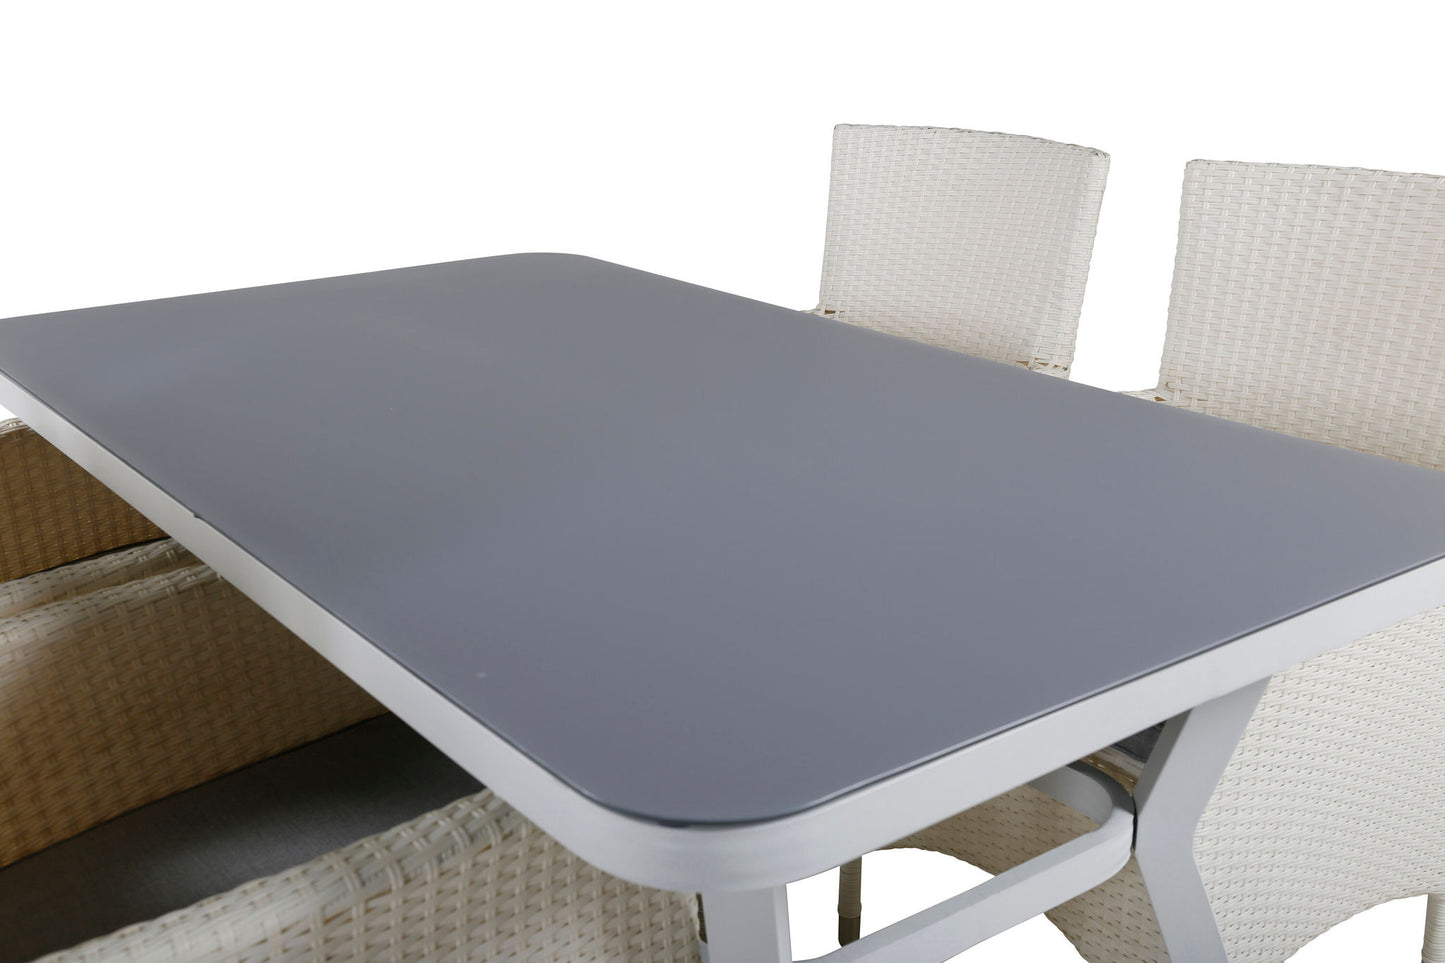 Virya - Spisebord, Hvid Alu / Grå glas - small table+ Mali - Lænestol med dyna - Hvid / grå dyna